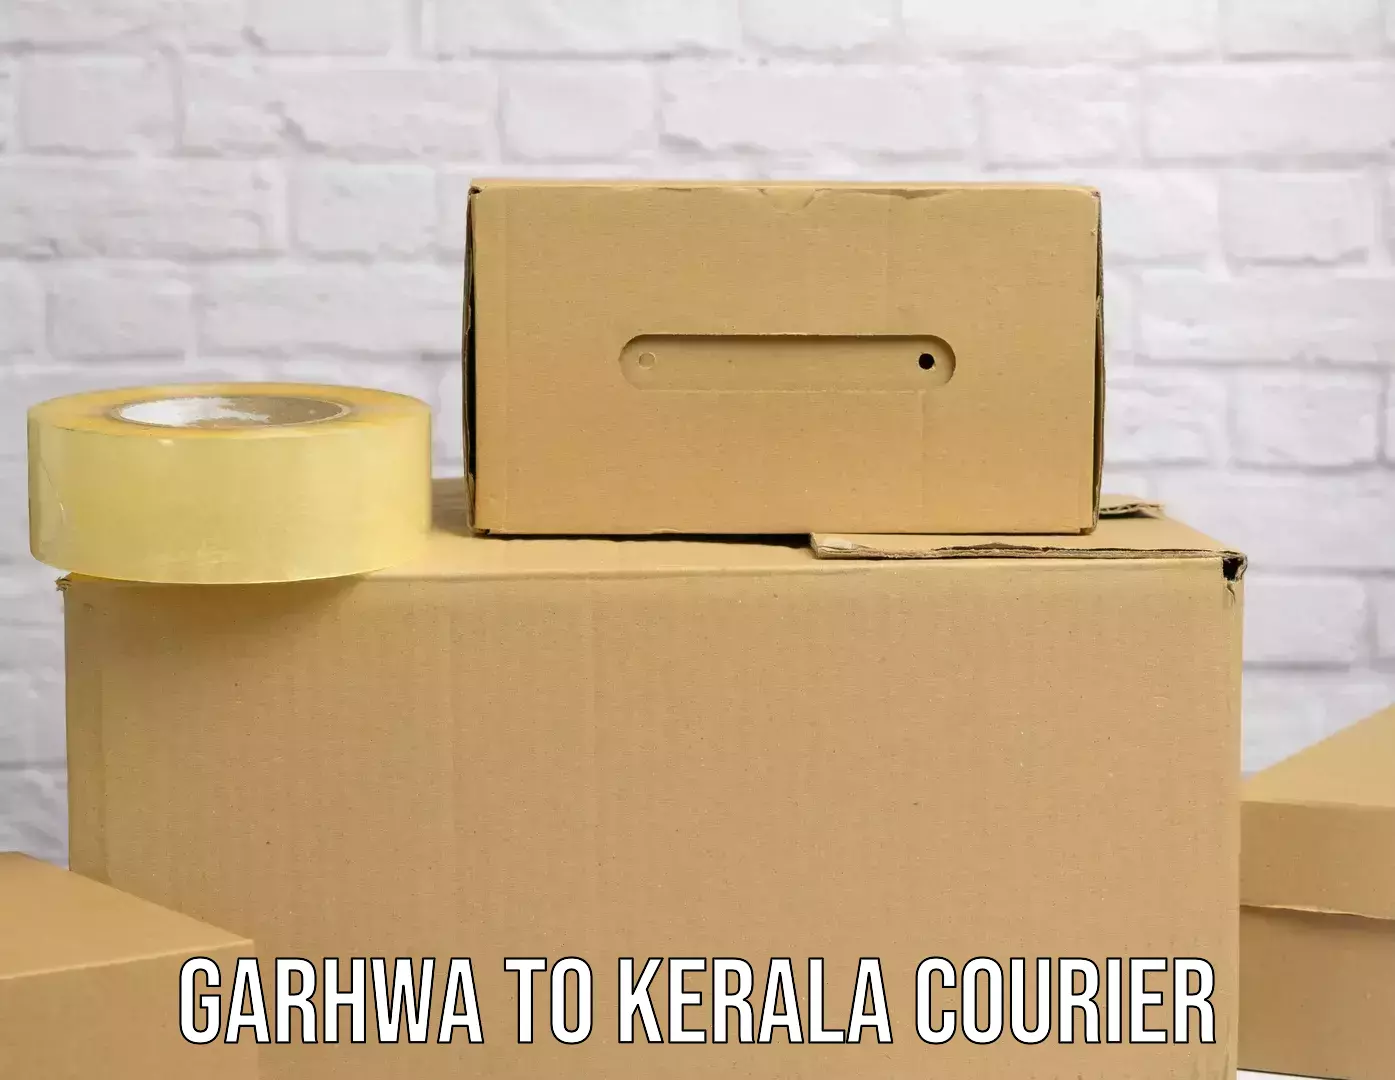 Urban courier service Garhwa to North Paravur